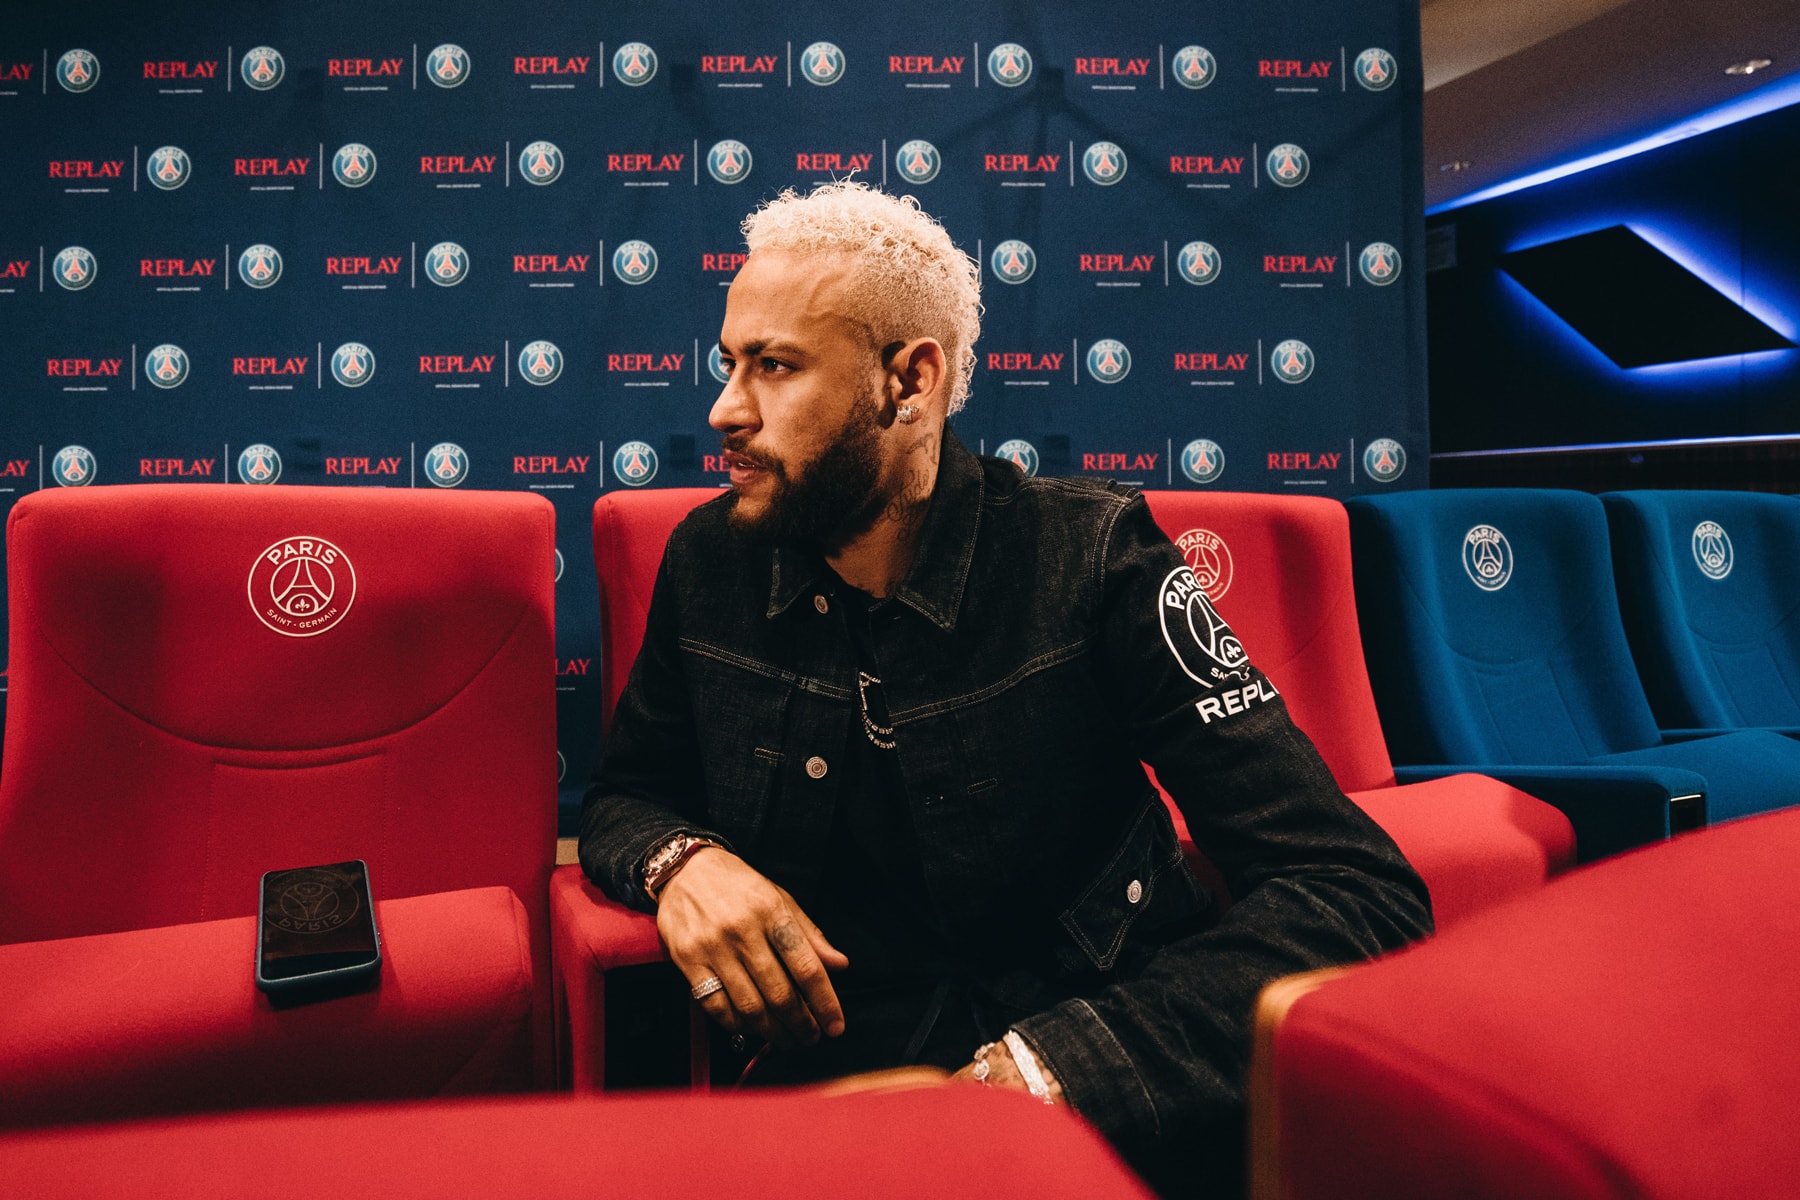 Neymar Jr. PSG x Replay Collection Interview paris saint germain collaborations interviews paris parc des princes football soccer denim capsules